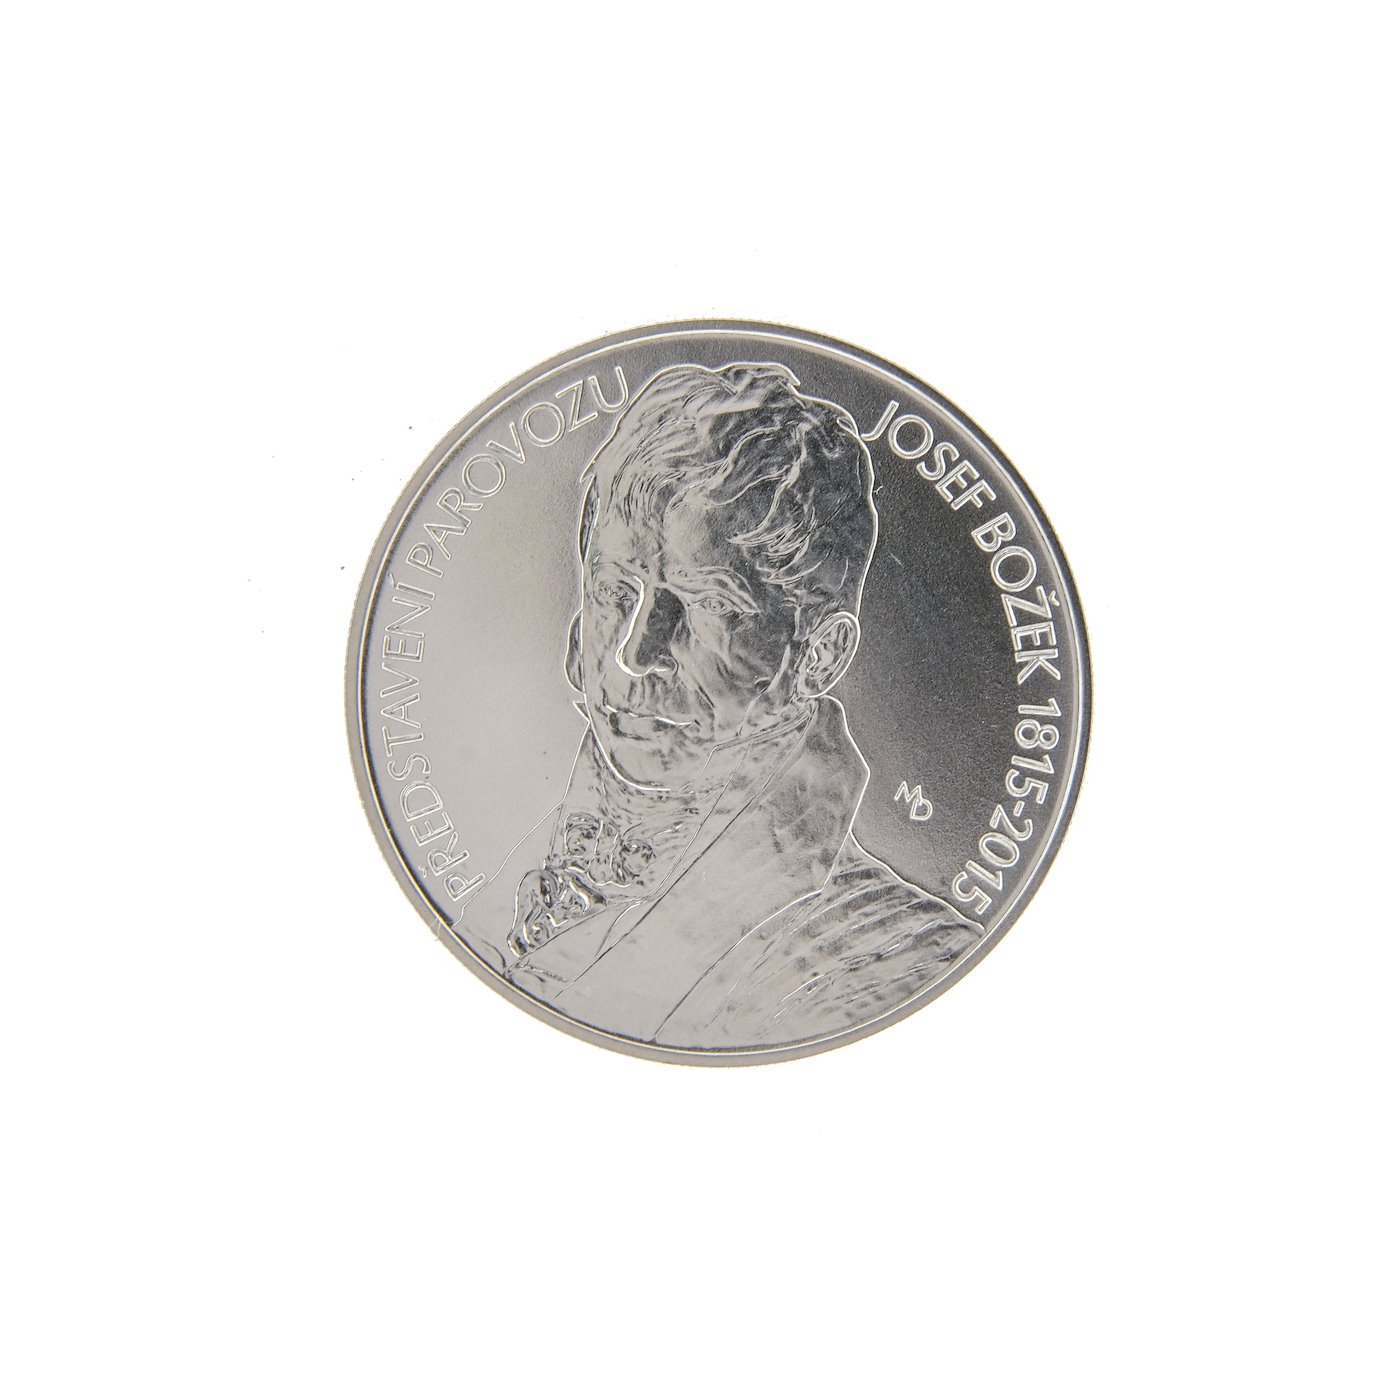 Mince - Konvolut 4 stříbrných investičních mincí, stříbro 3x 925/1000, 1x 900/1000. Hrubá hmotnost 4x 13g